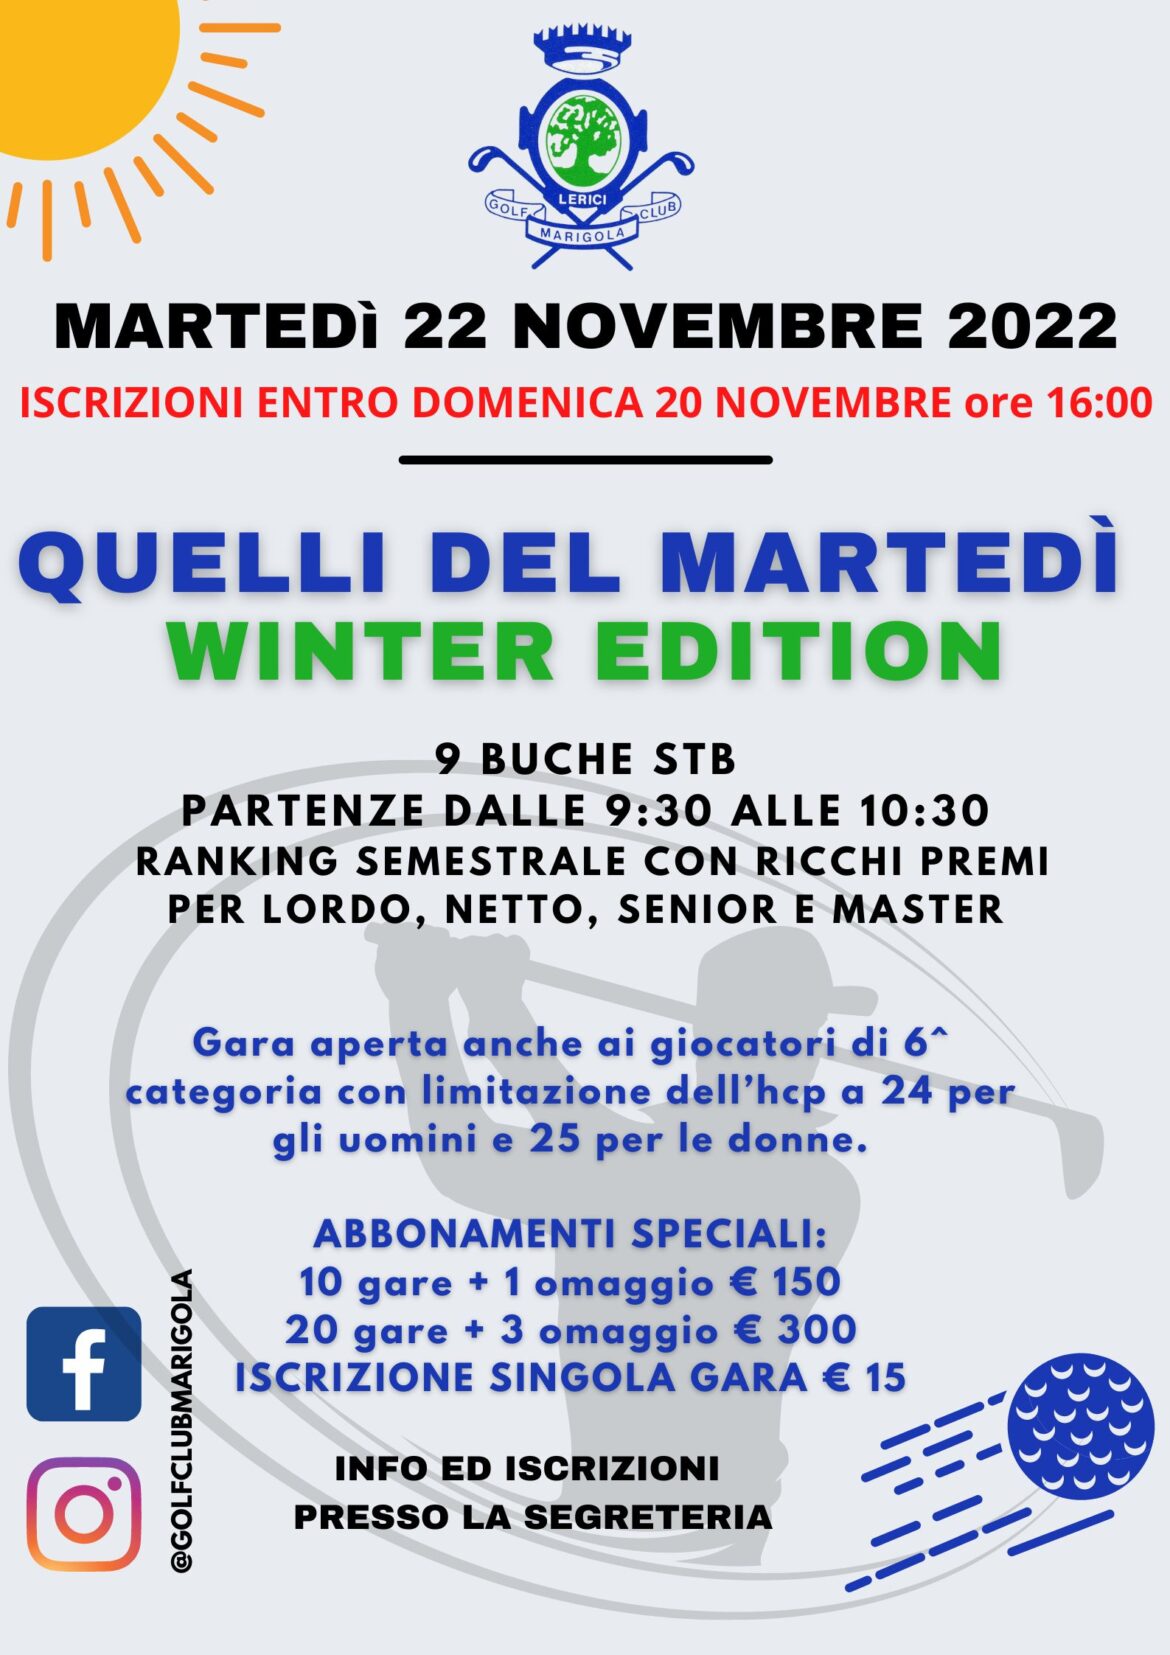 QUELLI DEL MARTEDÍ- winter edition – 22 NOVEMBRE 2022 – ANNULLATA